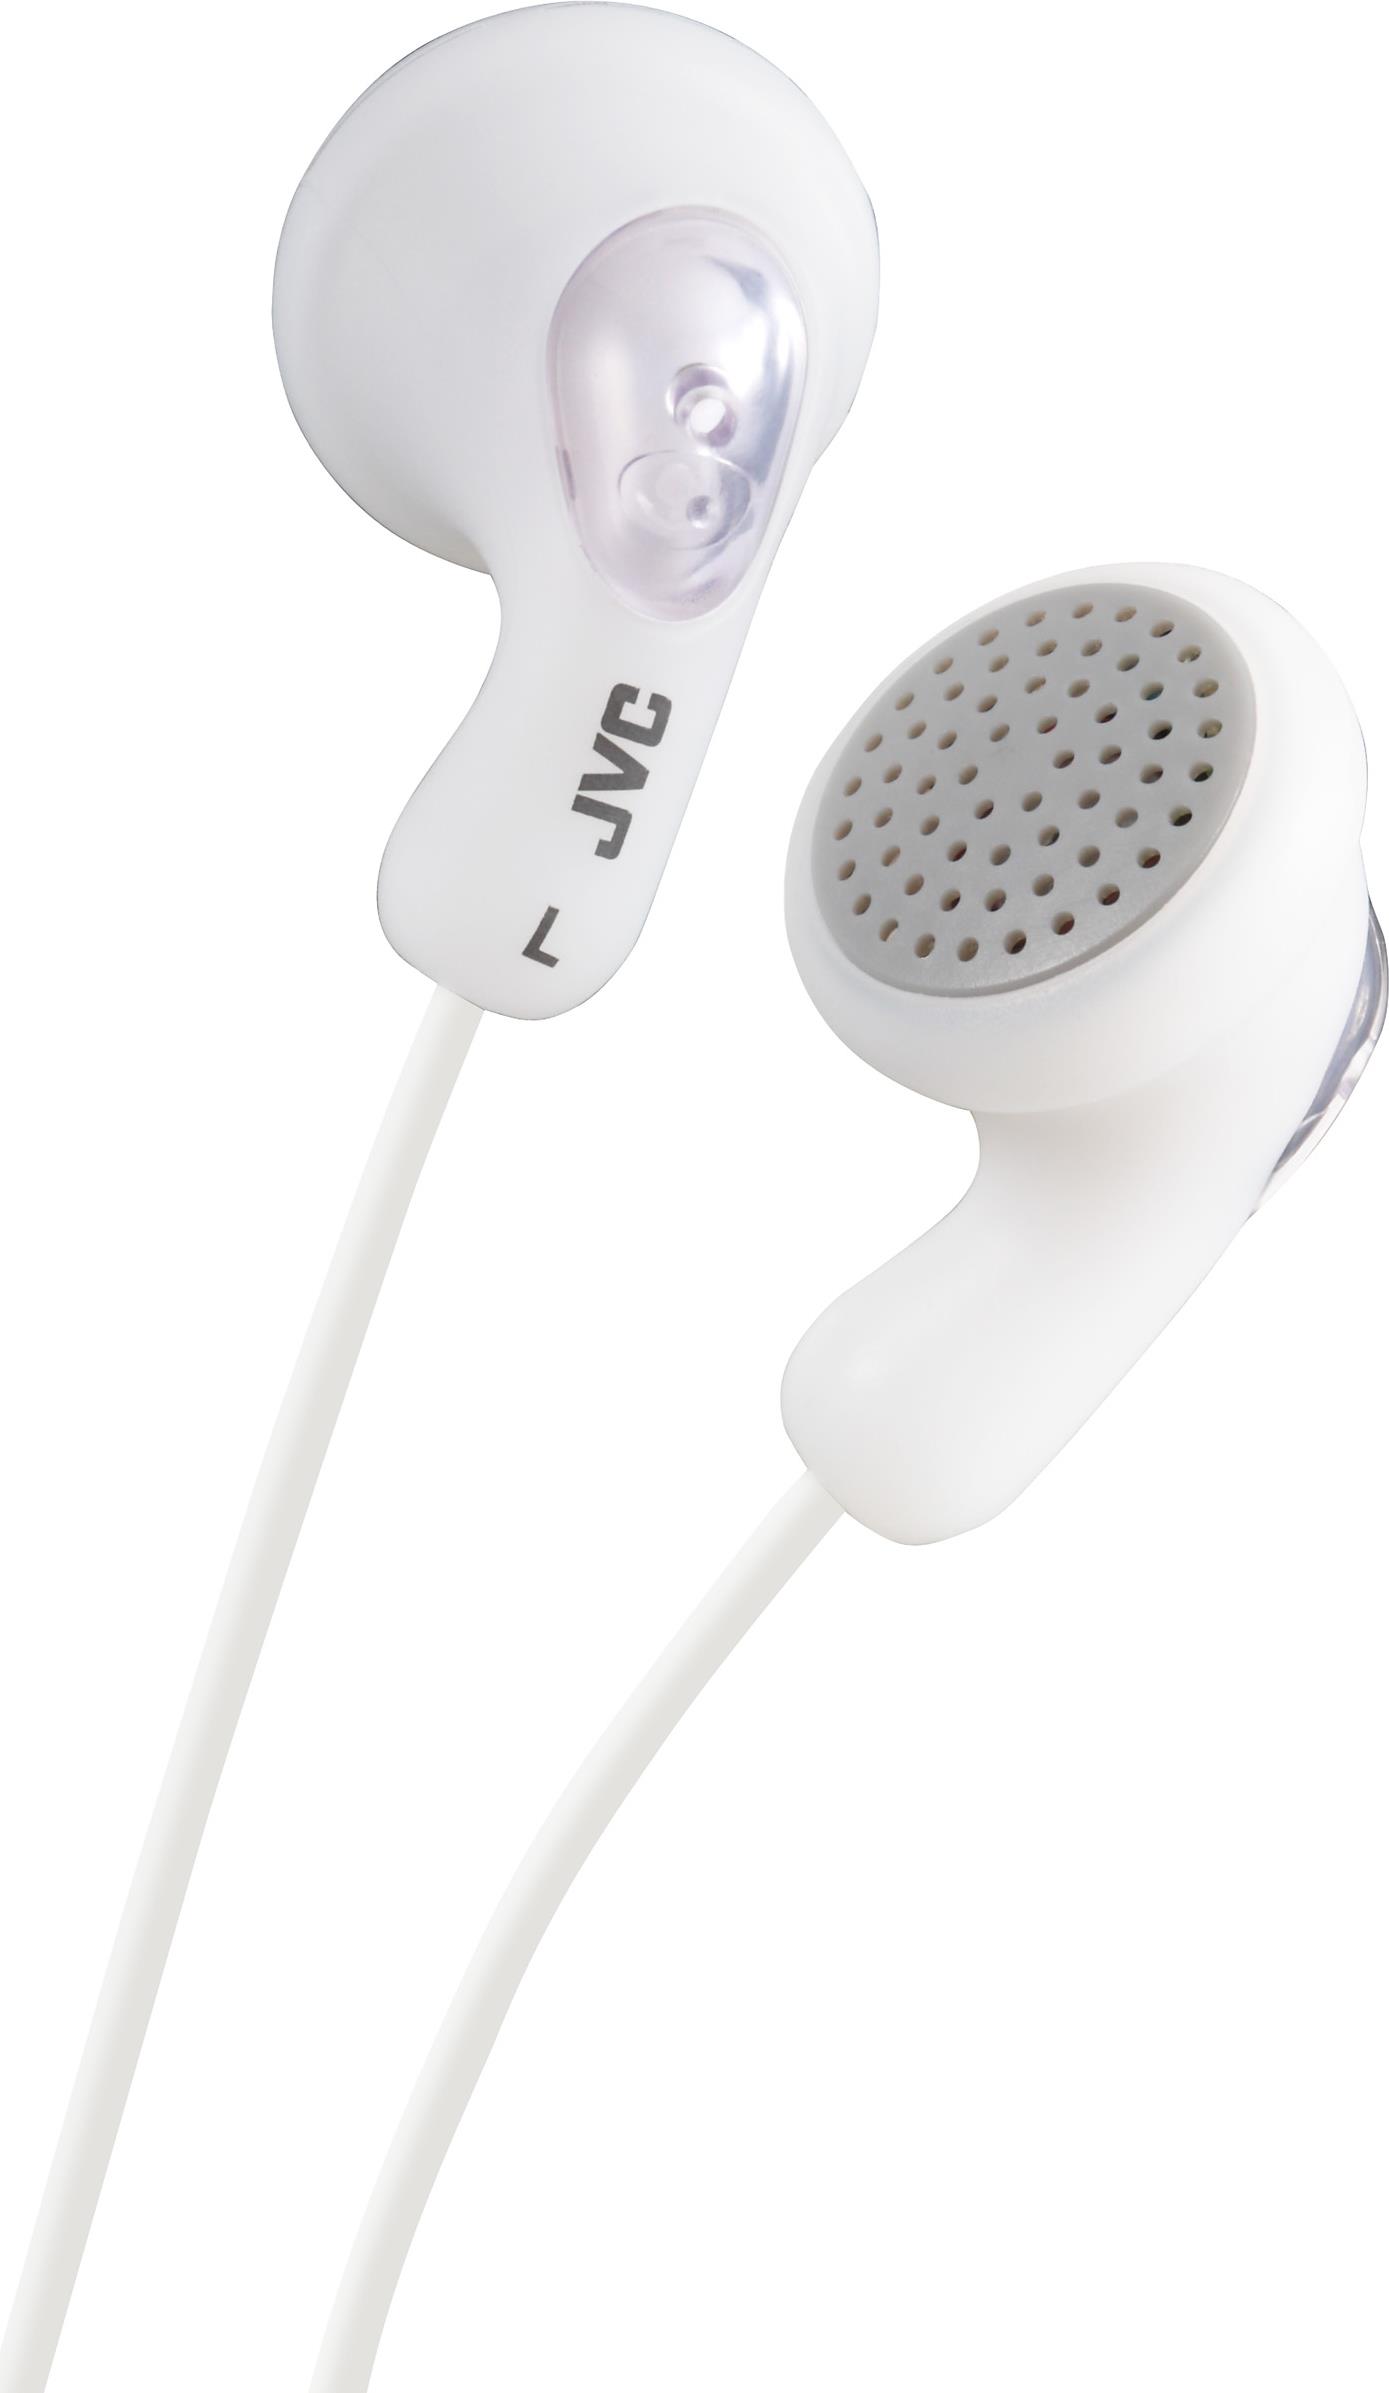 JVC HA-F14. Produkttyp: Kopfhörer. Übertragungstechnik: Kabelgebunden. Empfohlene Nutzung: Musik. Kopfhörerfrequenz: 16 - 20000 Hz. Kabellänge: 1 m. Gewicht: 17,1 g. Produktfarbe: Weiß (HA-F14-WN-U)